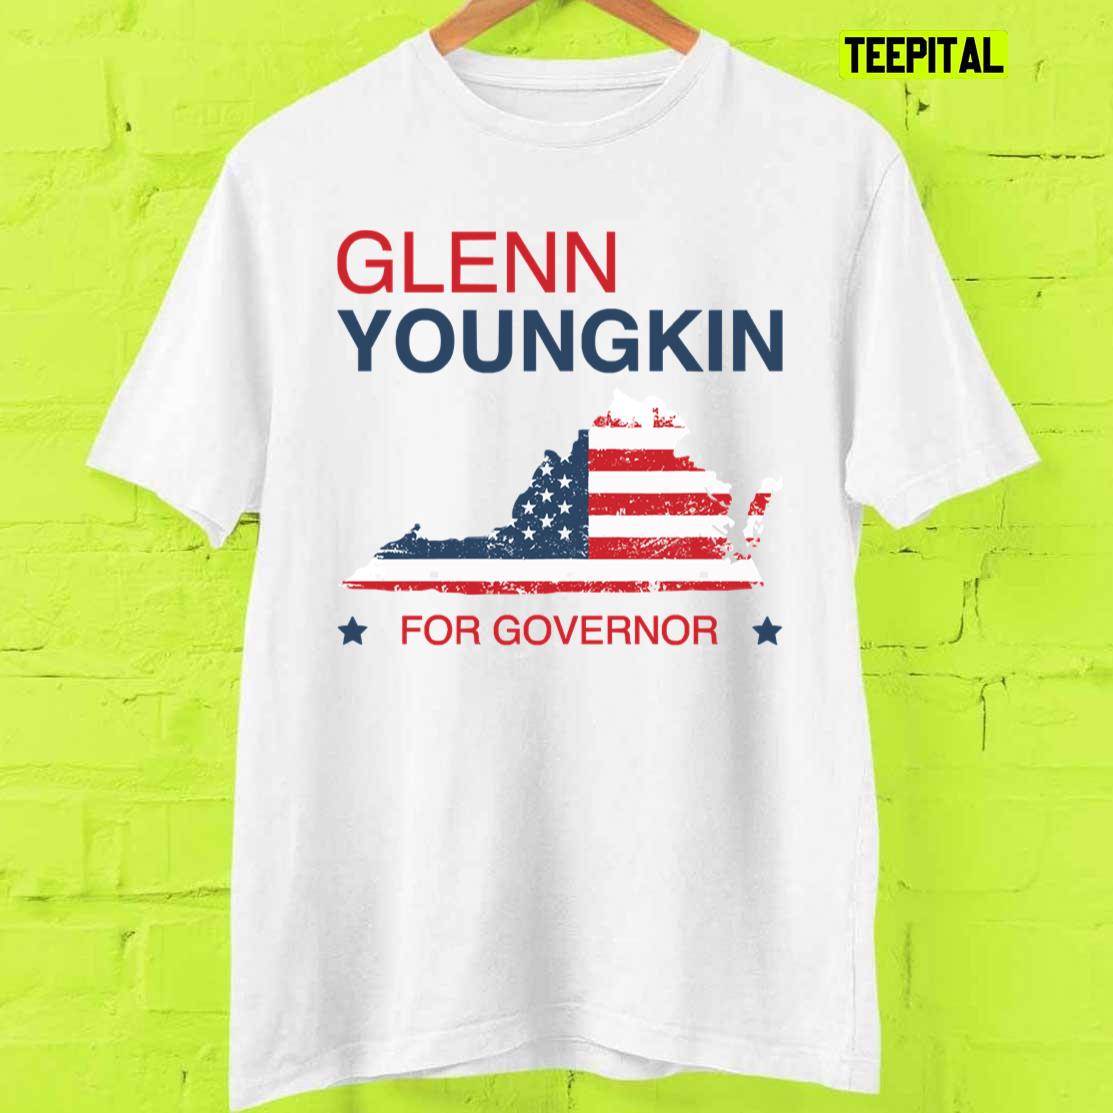 Virginia Governor 2021 Republican Glenn Youngkin T-Shirt